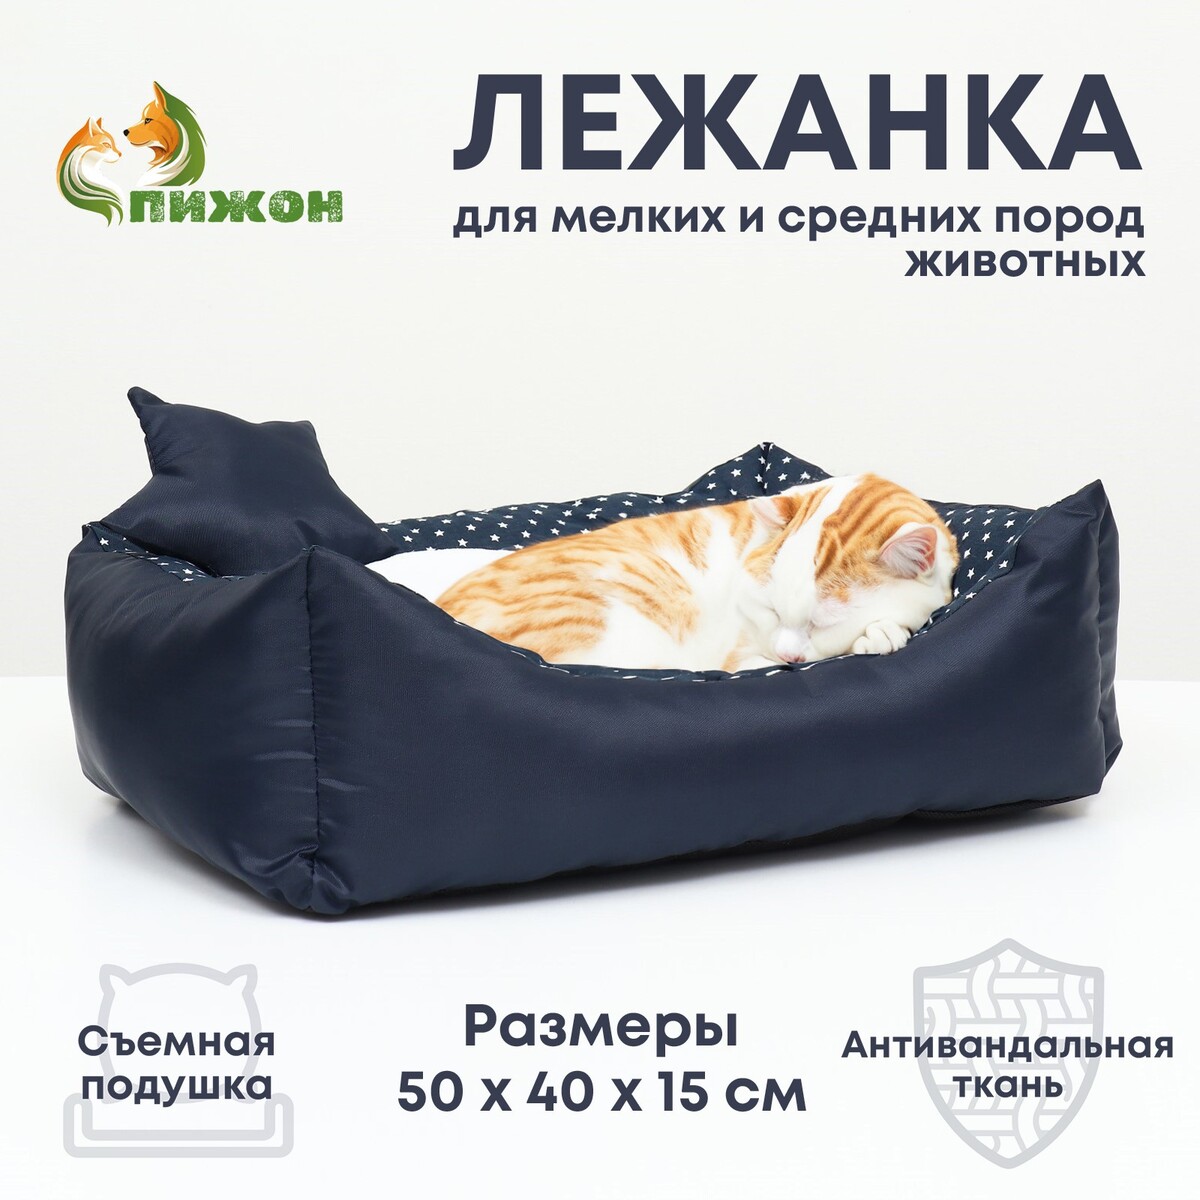 Лежанка со звездочками , 50 х 40 х 15 см, подушка из бязи, флиса, вигвамия подушка для отдыха и сна для беременных